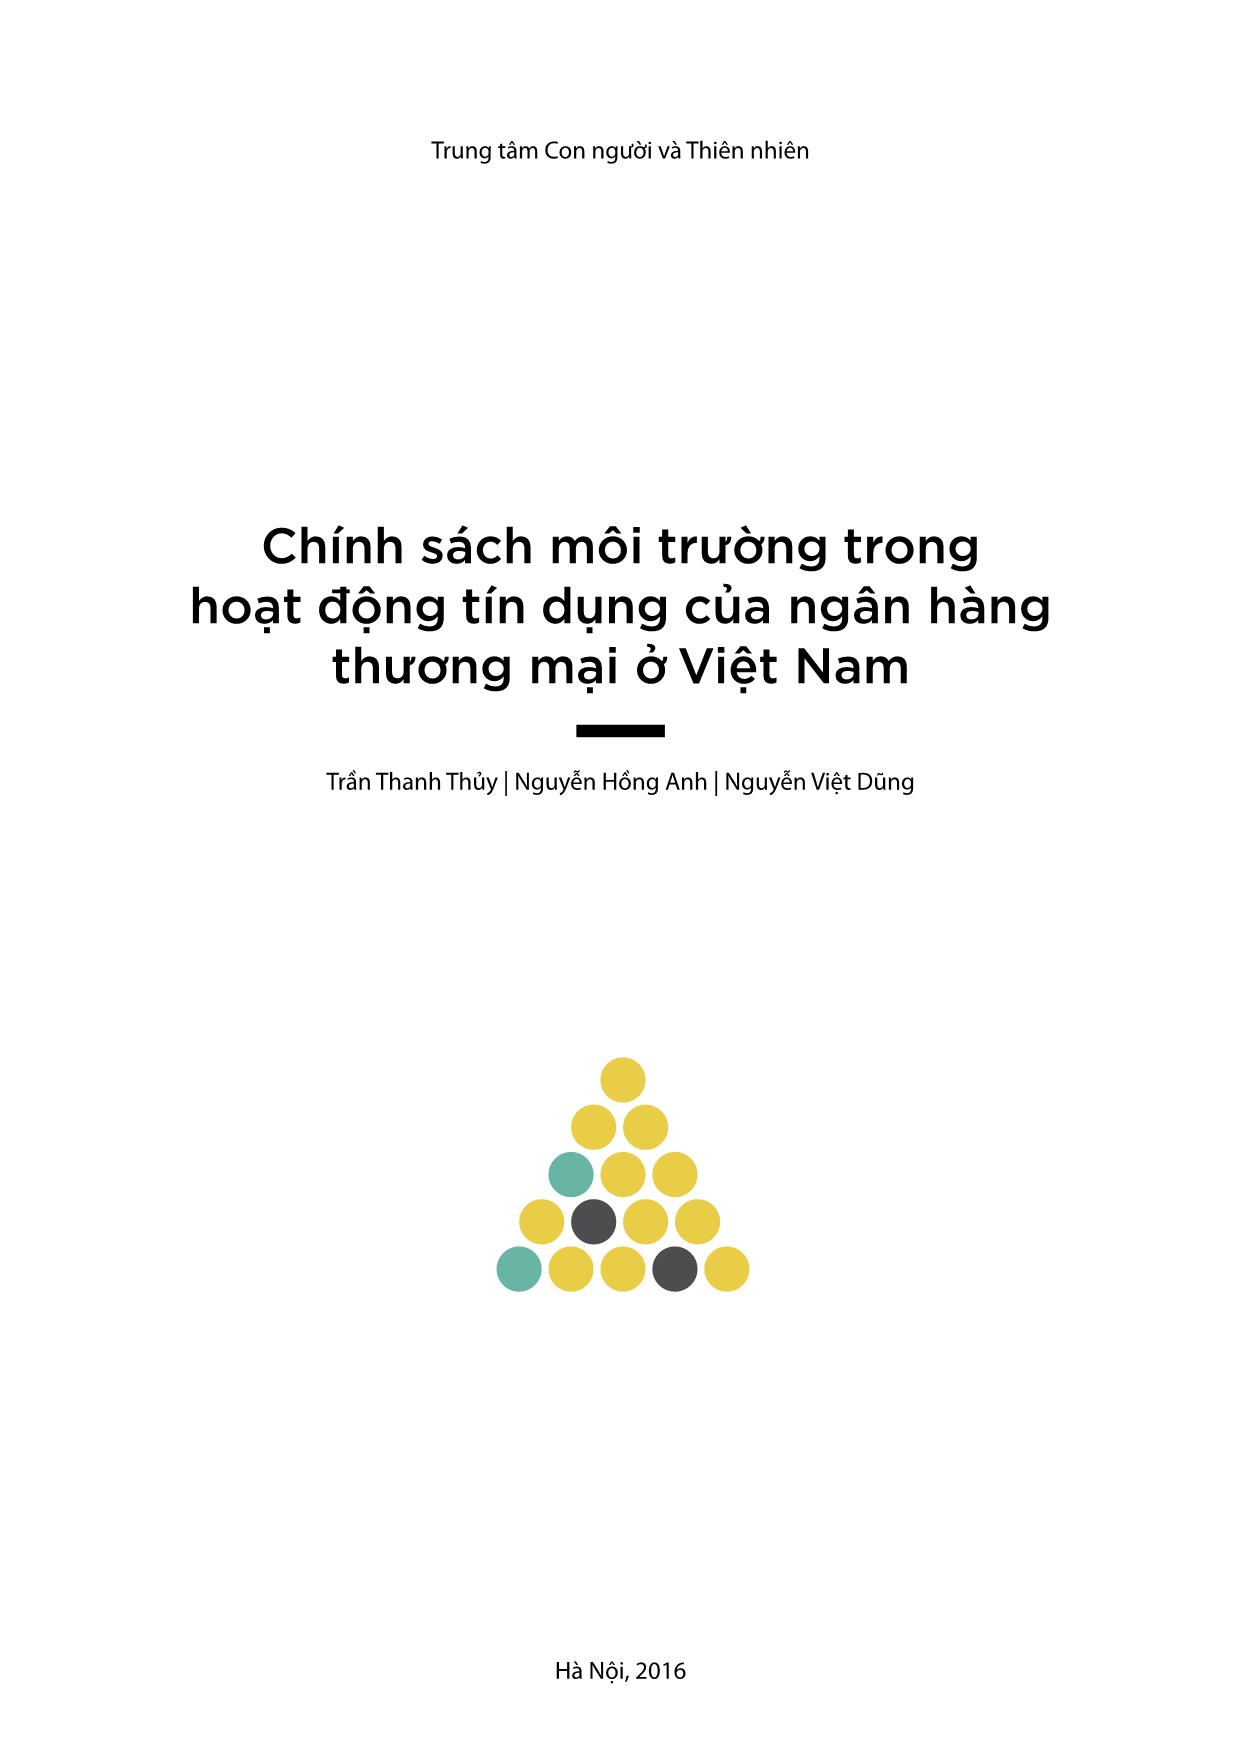 Chính sách môi trường trong hoạt động tín dụng của ngân hàng thương mại ở Việt Nam trang 3